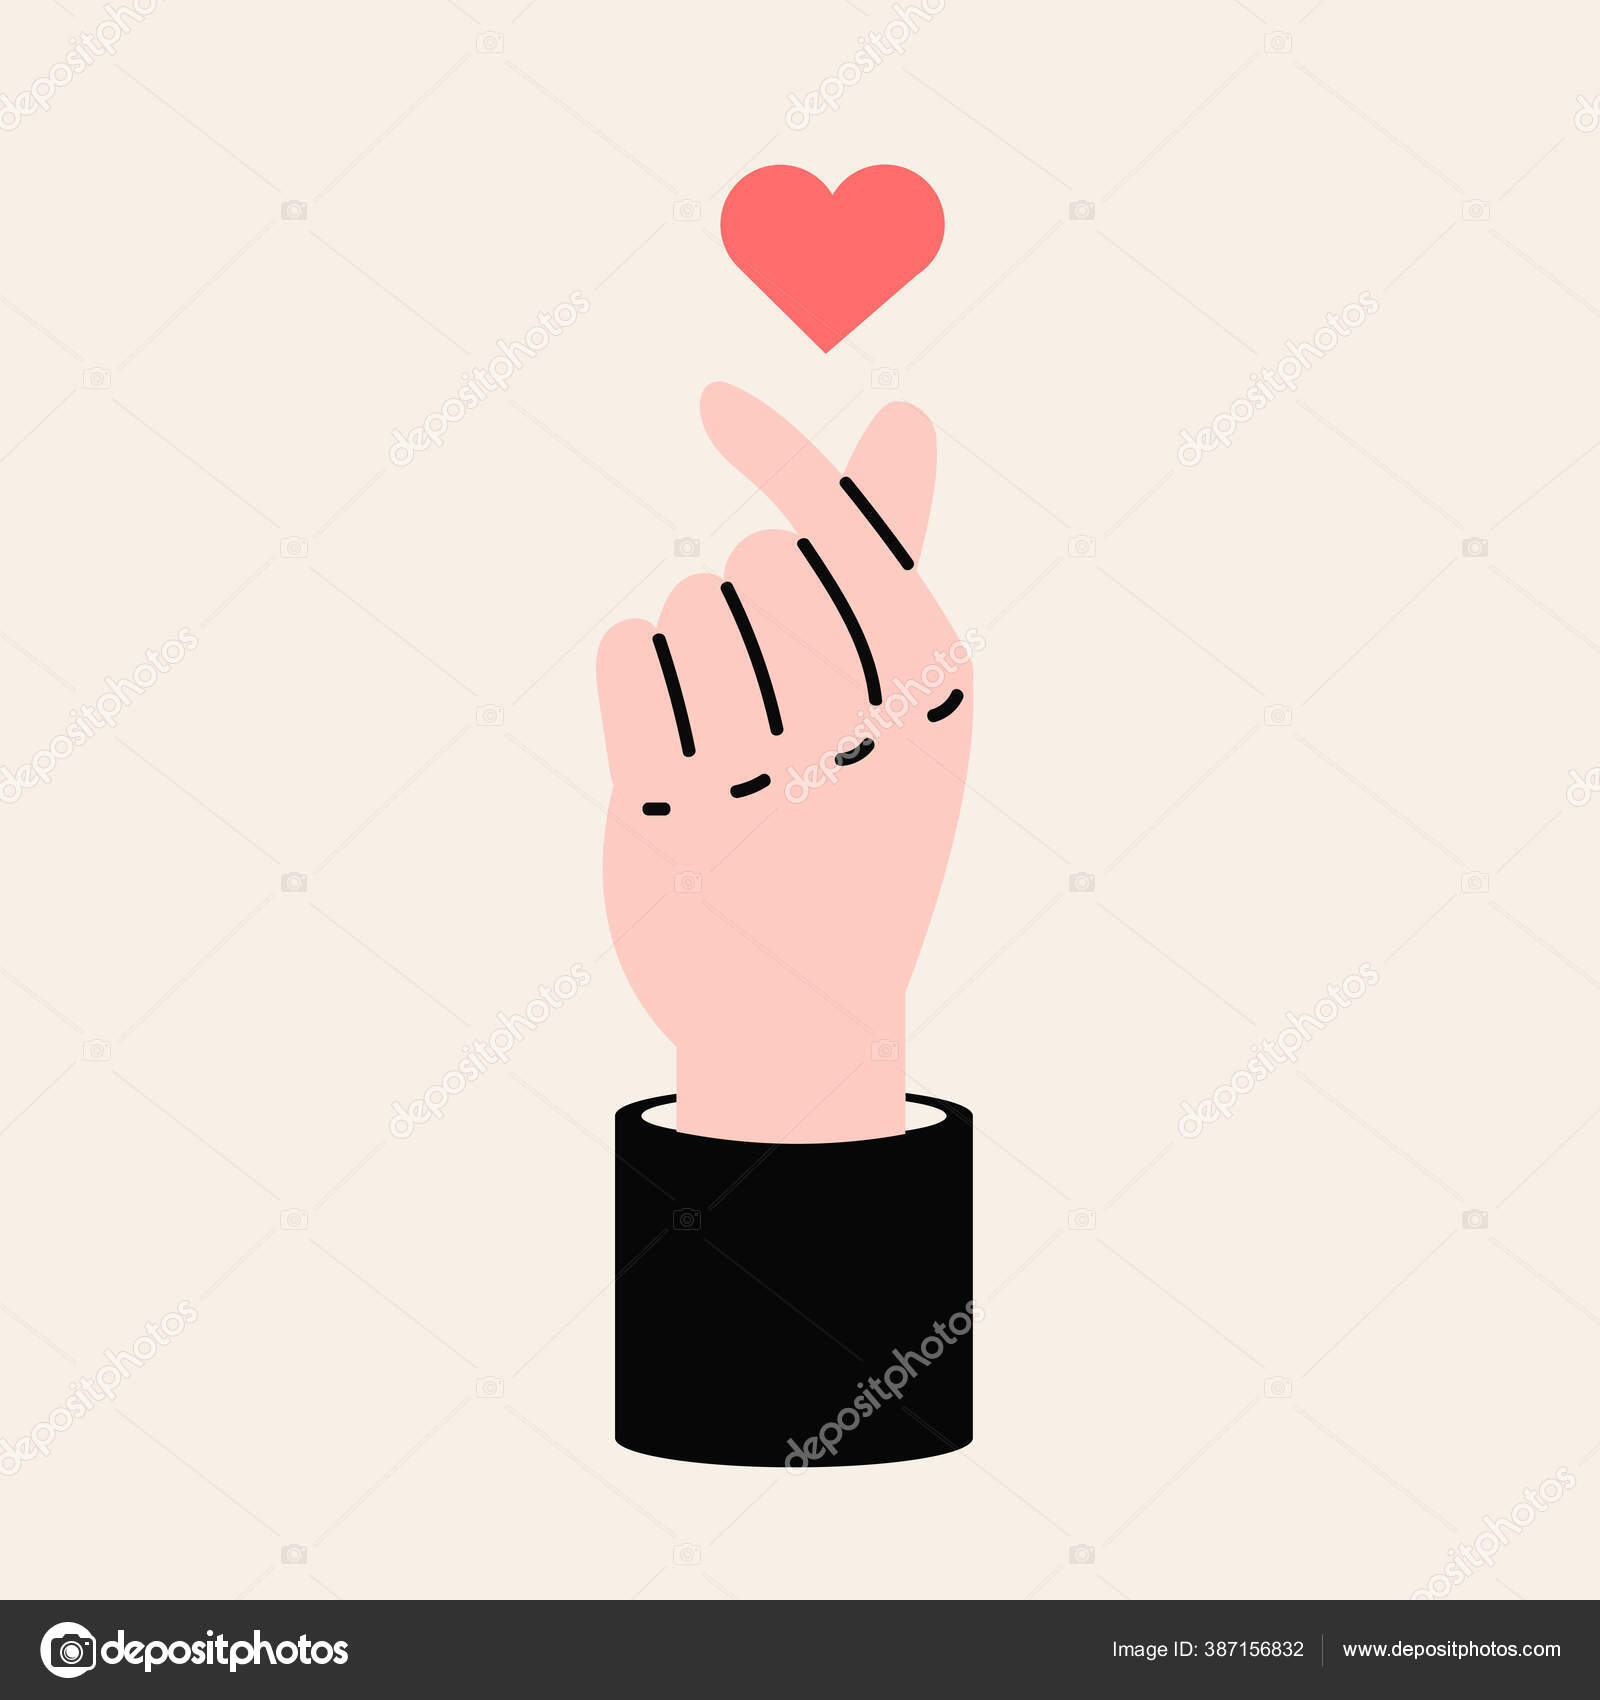 Premium Vector  Mini hearts hands sign